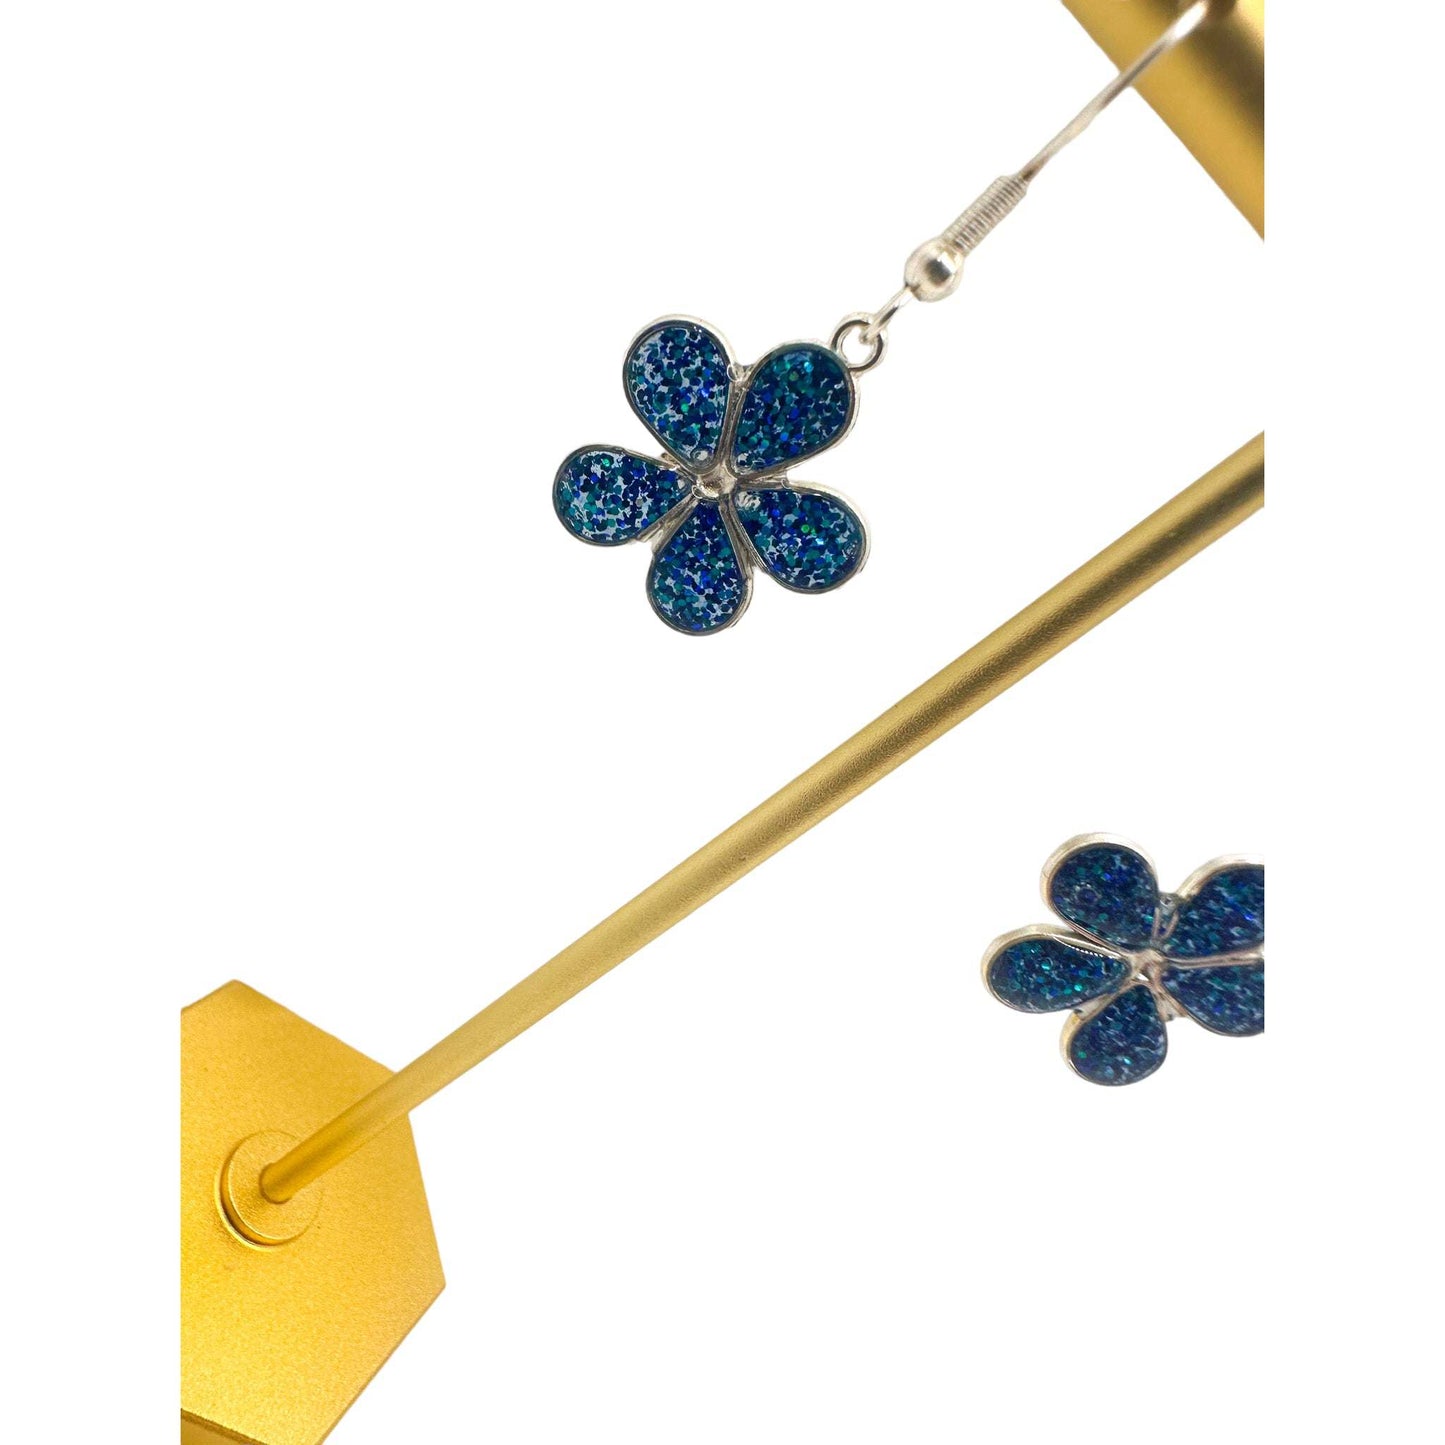 Flower Earrings - Blue Glitter & Silver Frame